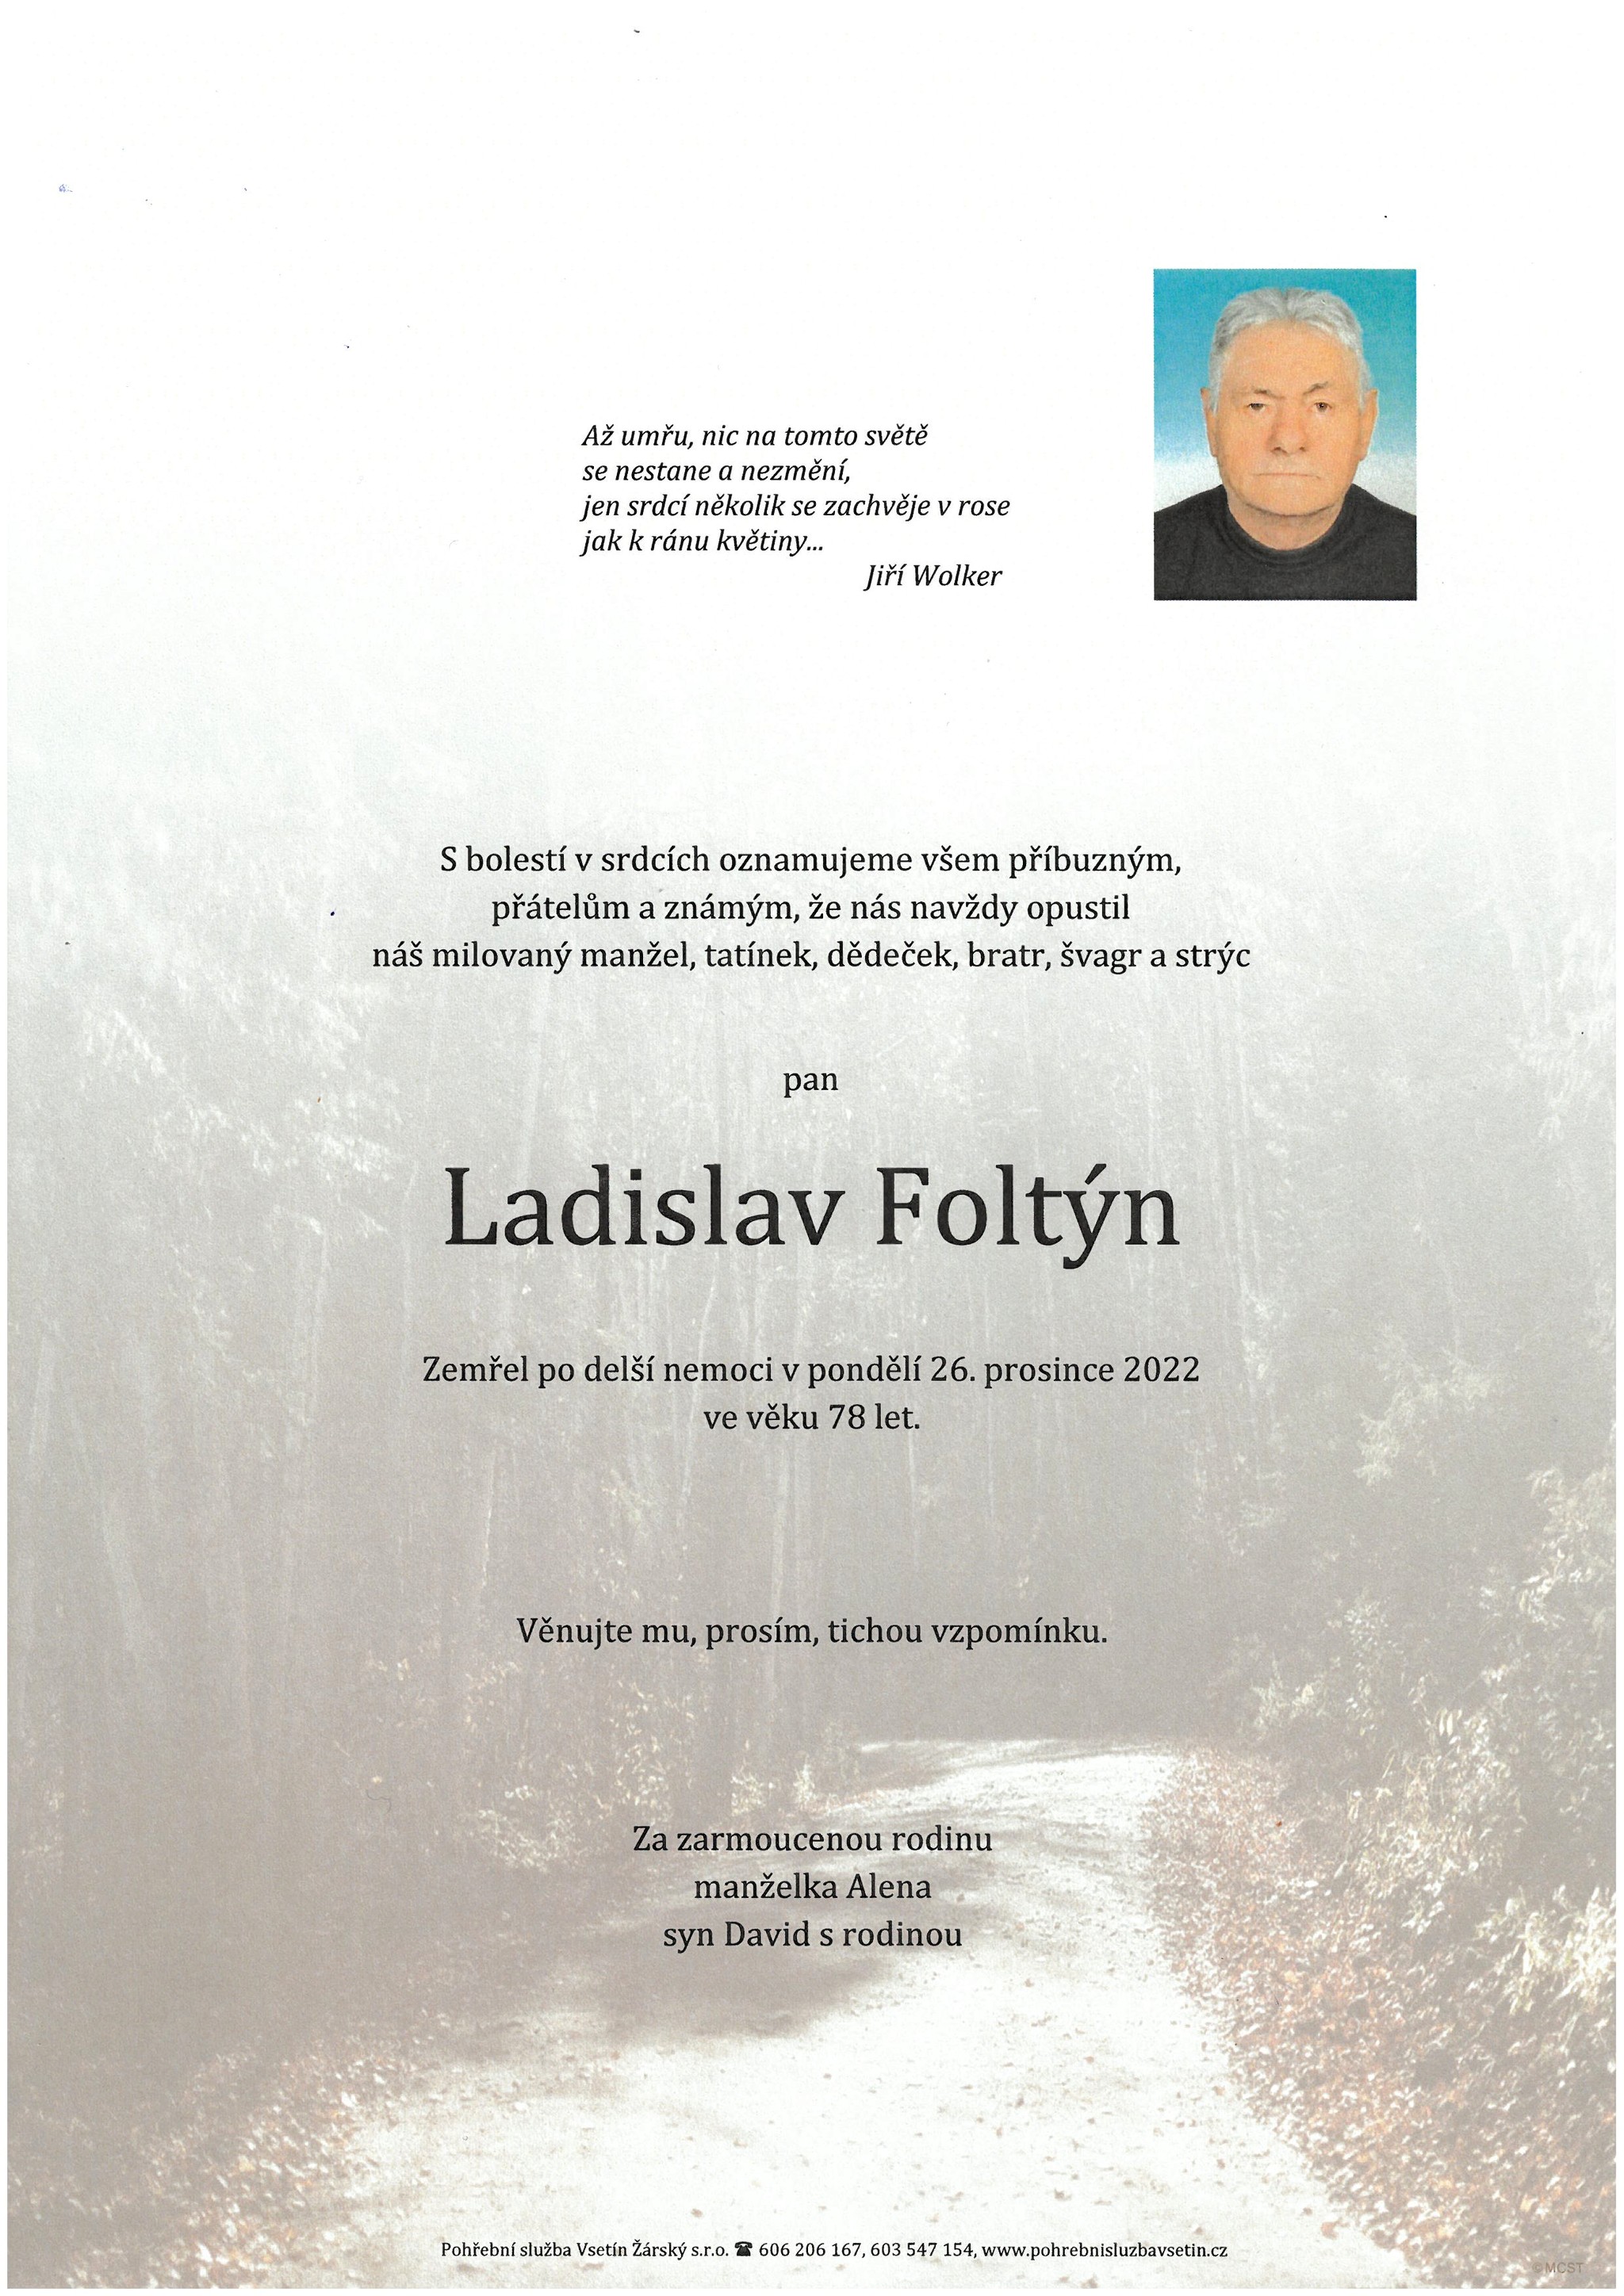 Ladislav Foltýn